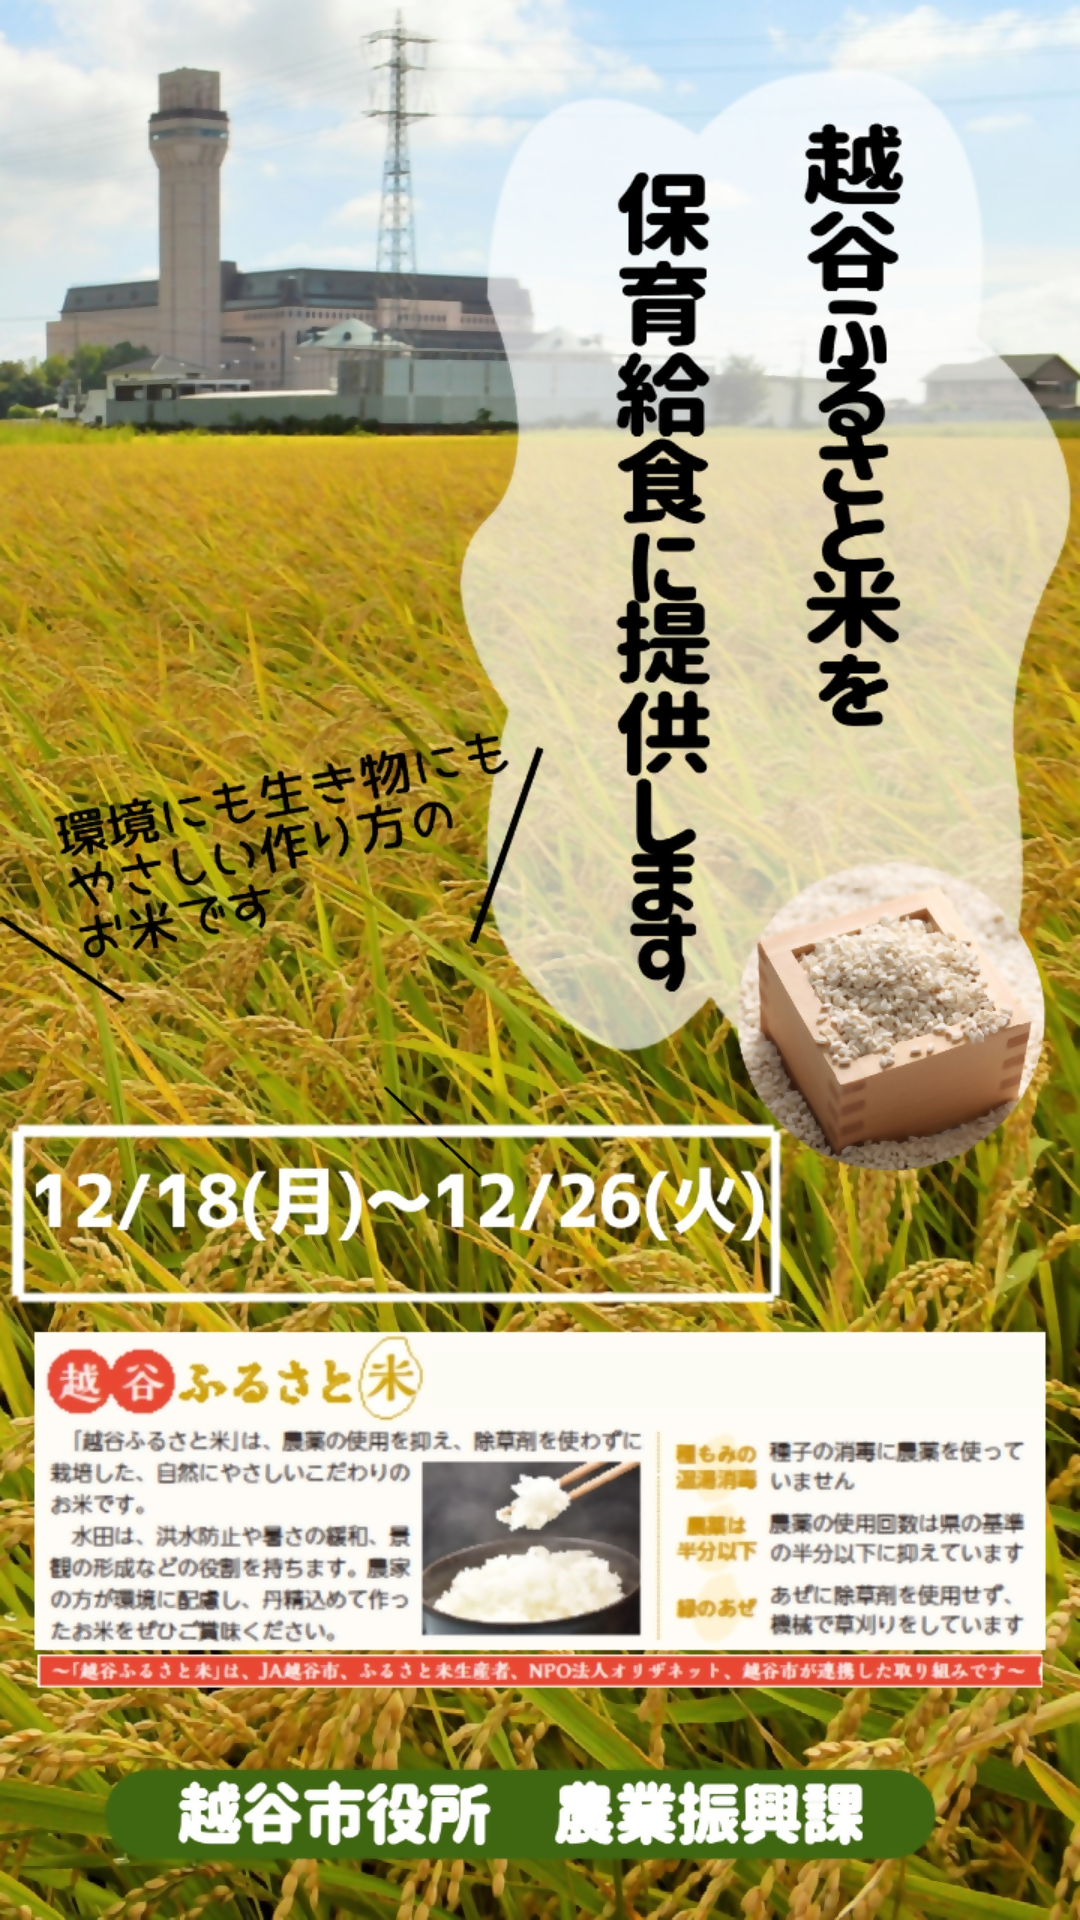 越谷ふるさと米を保育給食に使用